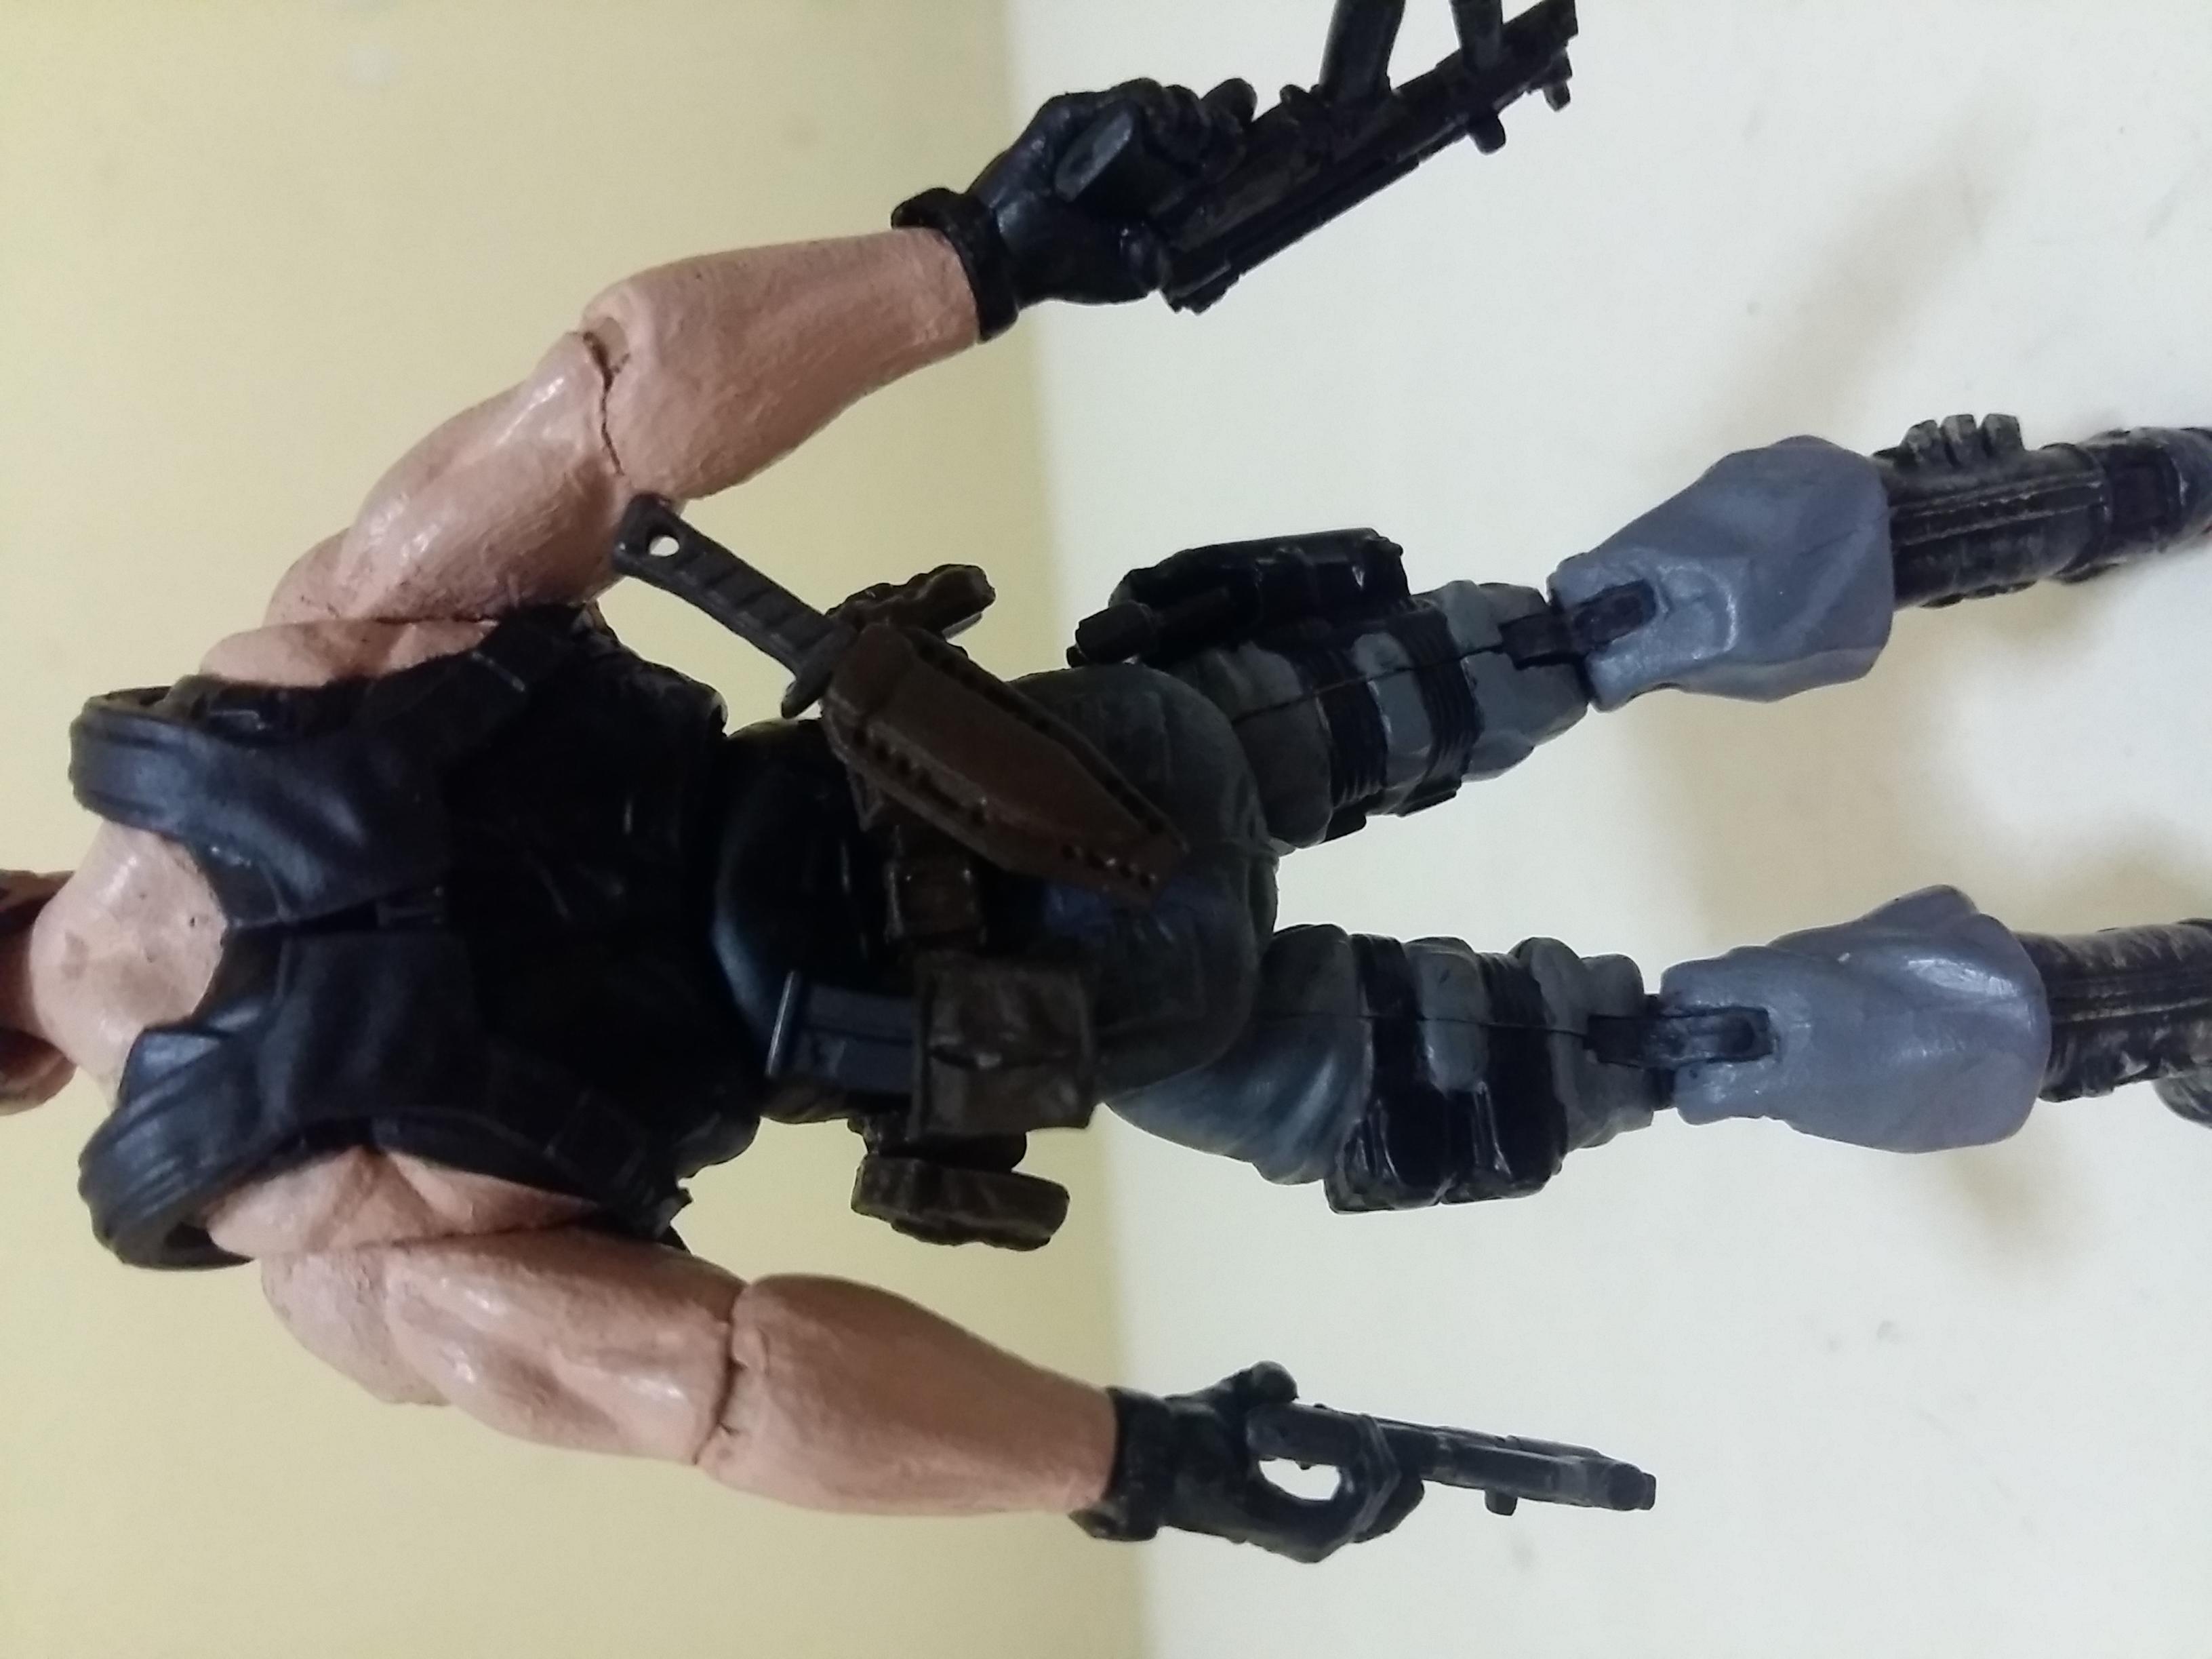 MH064 Custom Cast Male head for use with 3.75" GI Joe Star Wars Marvel figures 